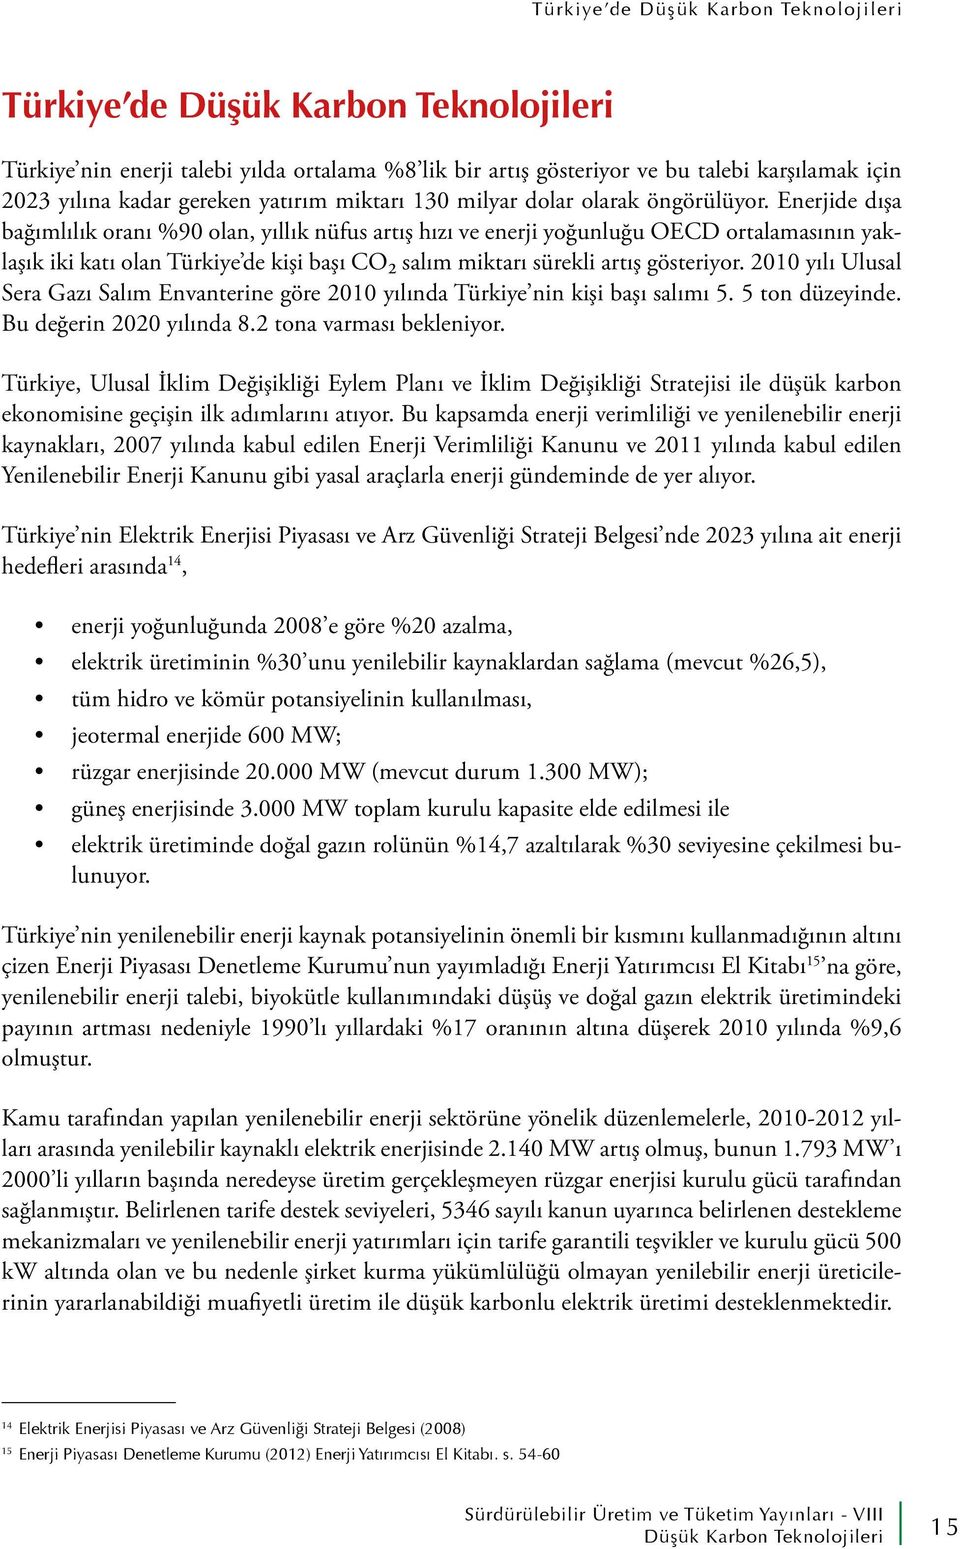 2010 yılı Ulusal Sera Gazı Salım Envanterine göre 2010 yılında Türkiye nin kişi başı salımı 5. 5 ton düzeyinde. Bu değerin 2020 yılında 8.2 tona varması bekleniyor.